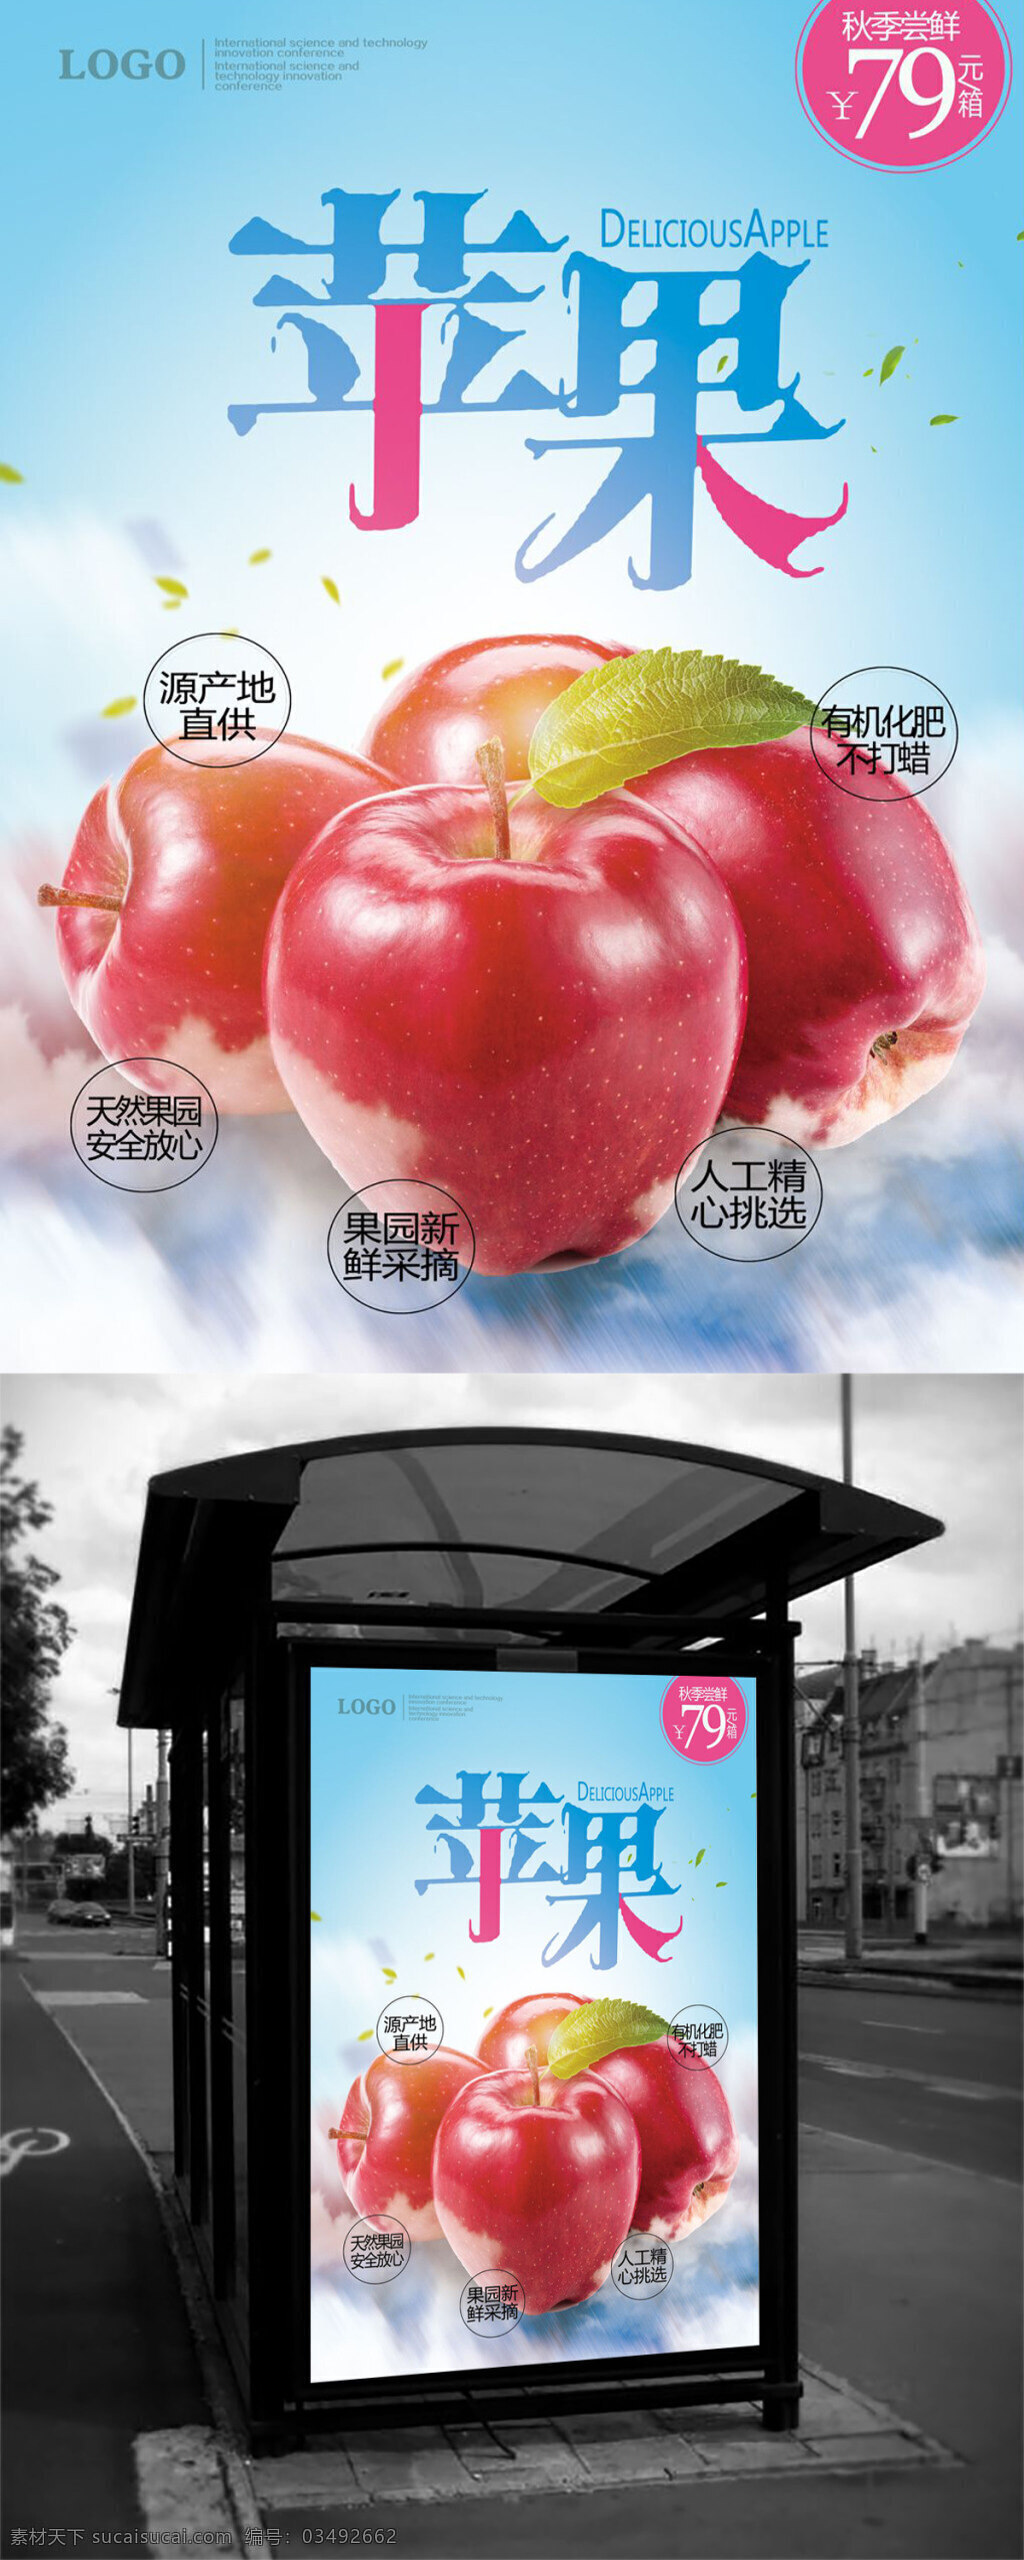 诱人 苹果 新鲜 水果 海报 水果海报 苹果海报 水果图片 新鲜水果海报 水果店海报 水果店背景 水果批发 超市水果海报 超市水果促销 超市水果广告